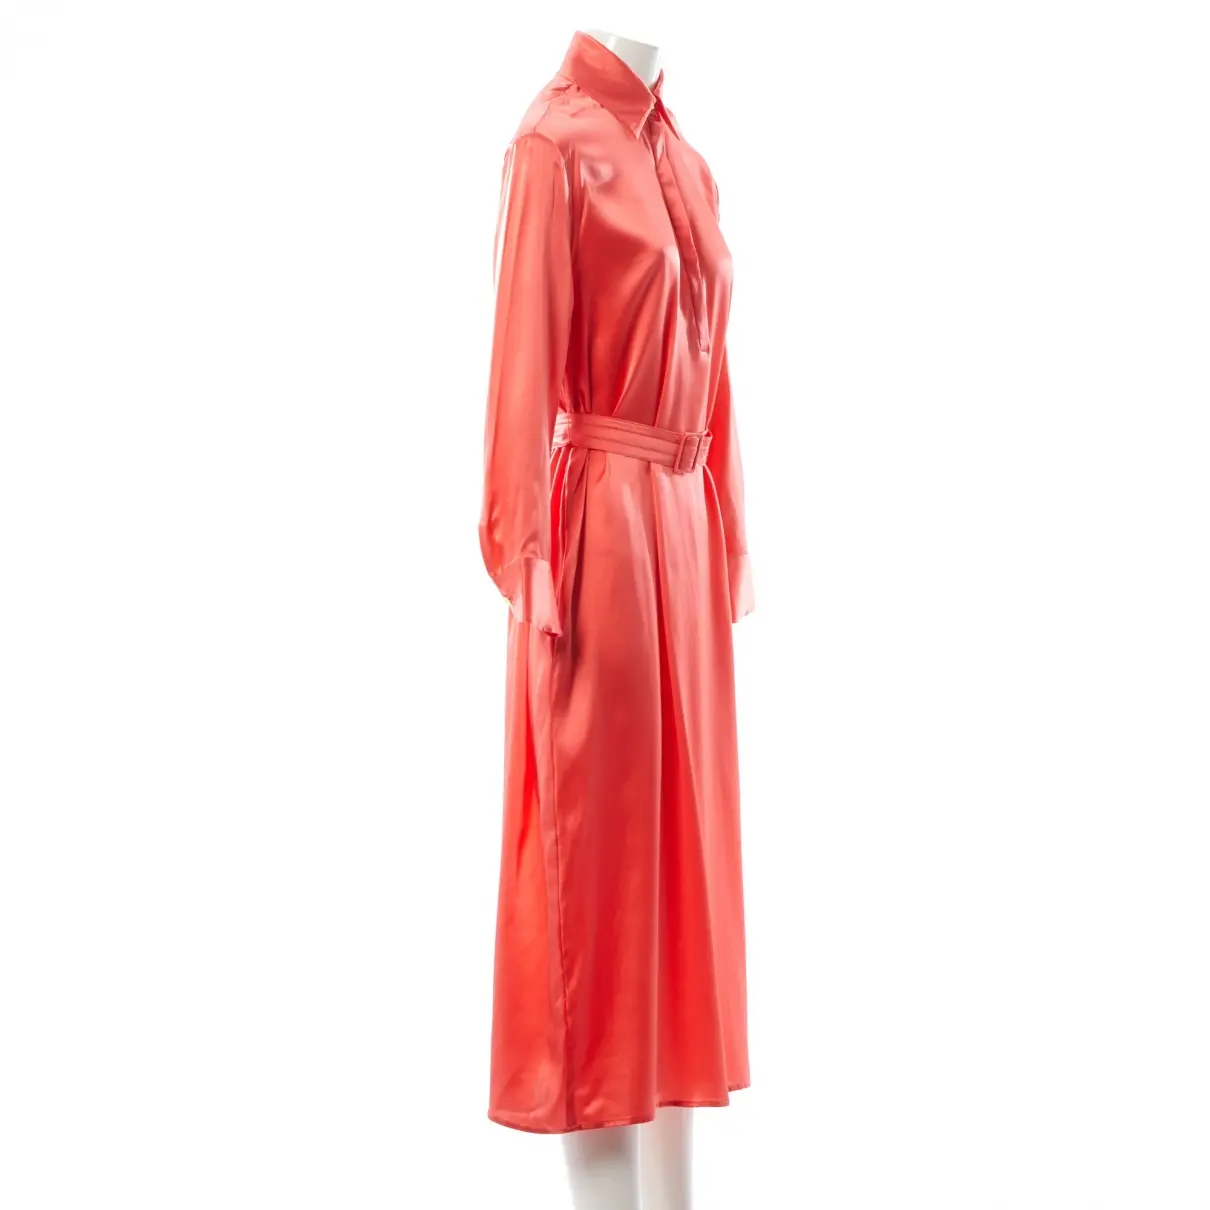 Malaikaraiss Silk mid-length dress for sale